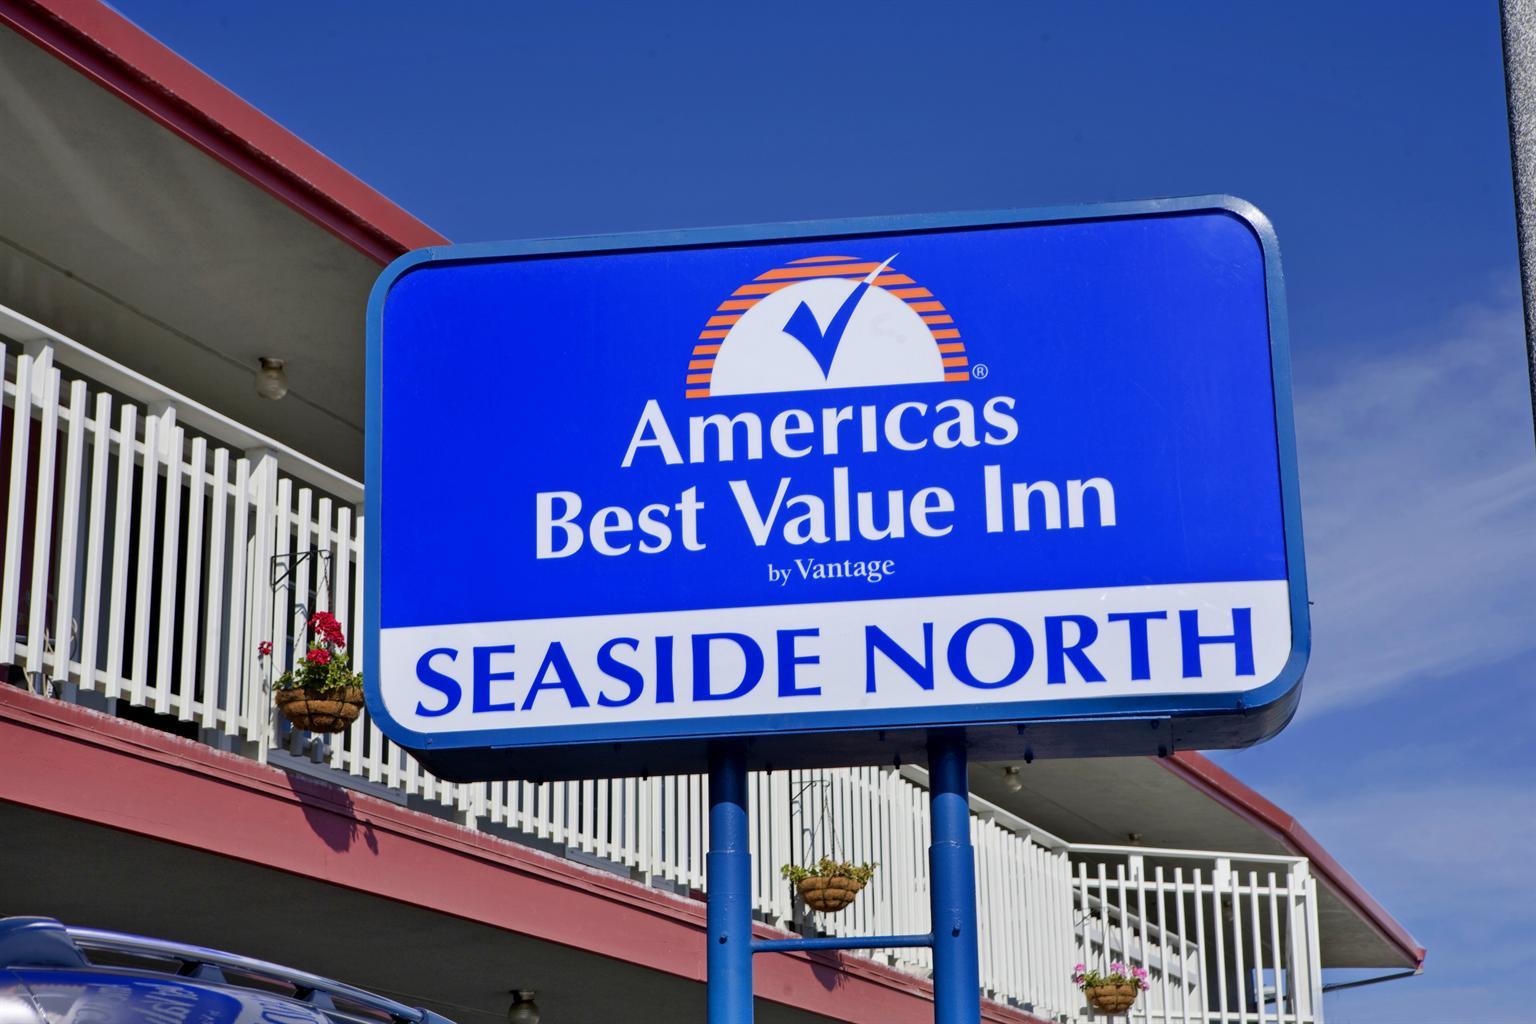 Americas Best Value Inn - Seaside North